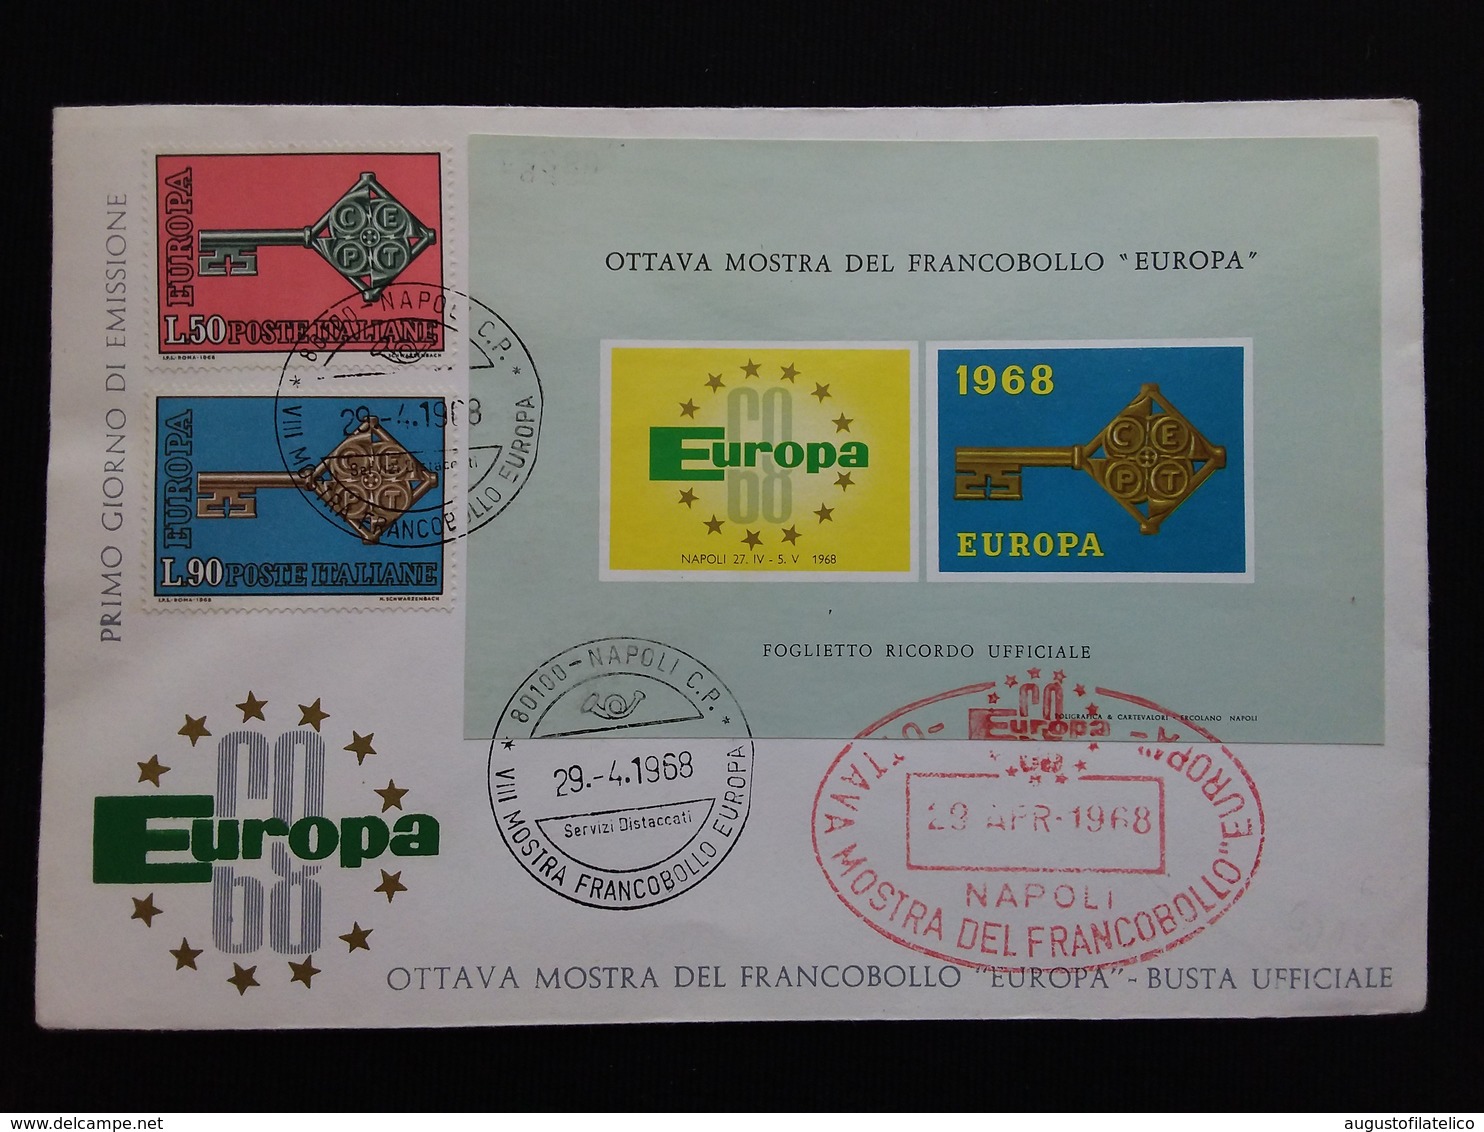 REPUBBLICA - Europa CEPT 1968 Serie + Foglietto Ricordo Ufficiale + Spese Postali - FDC